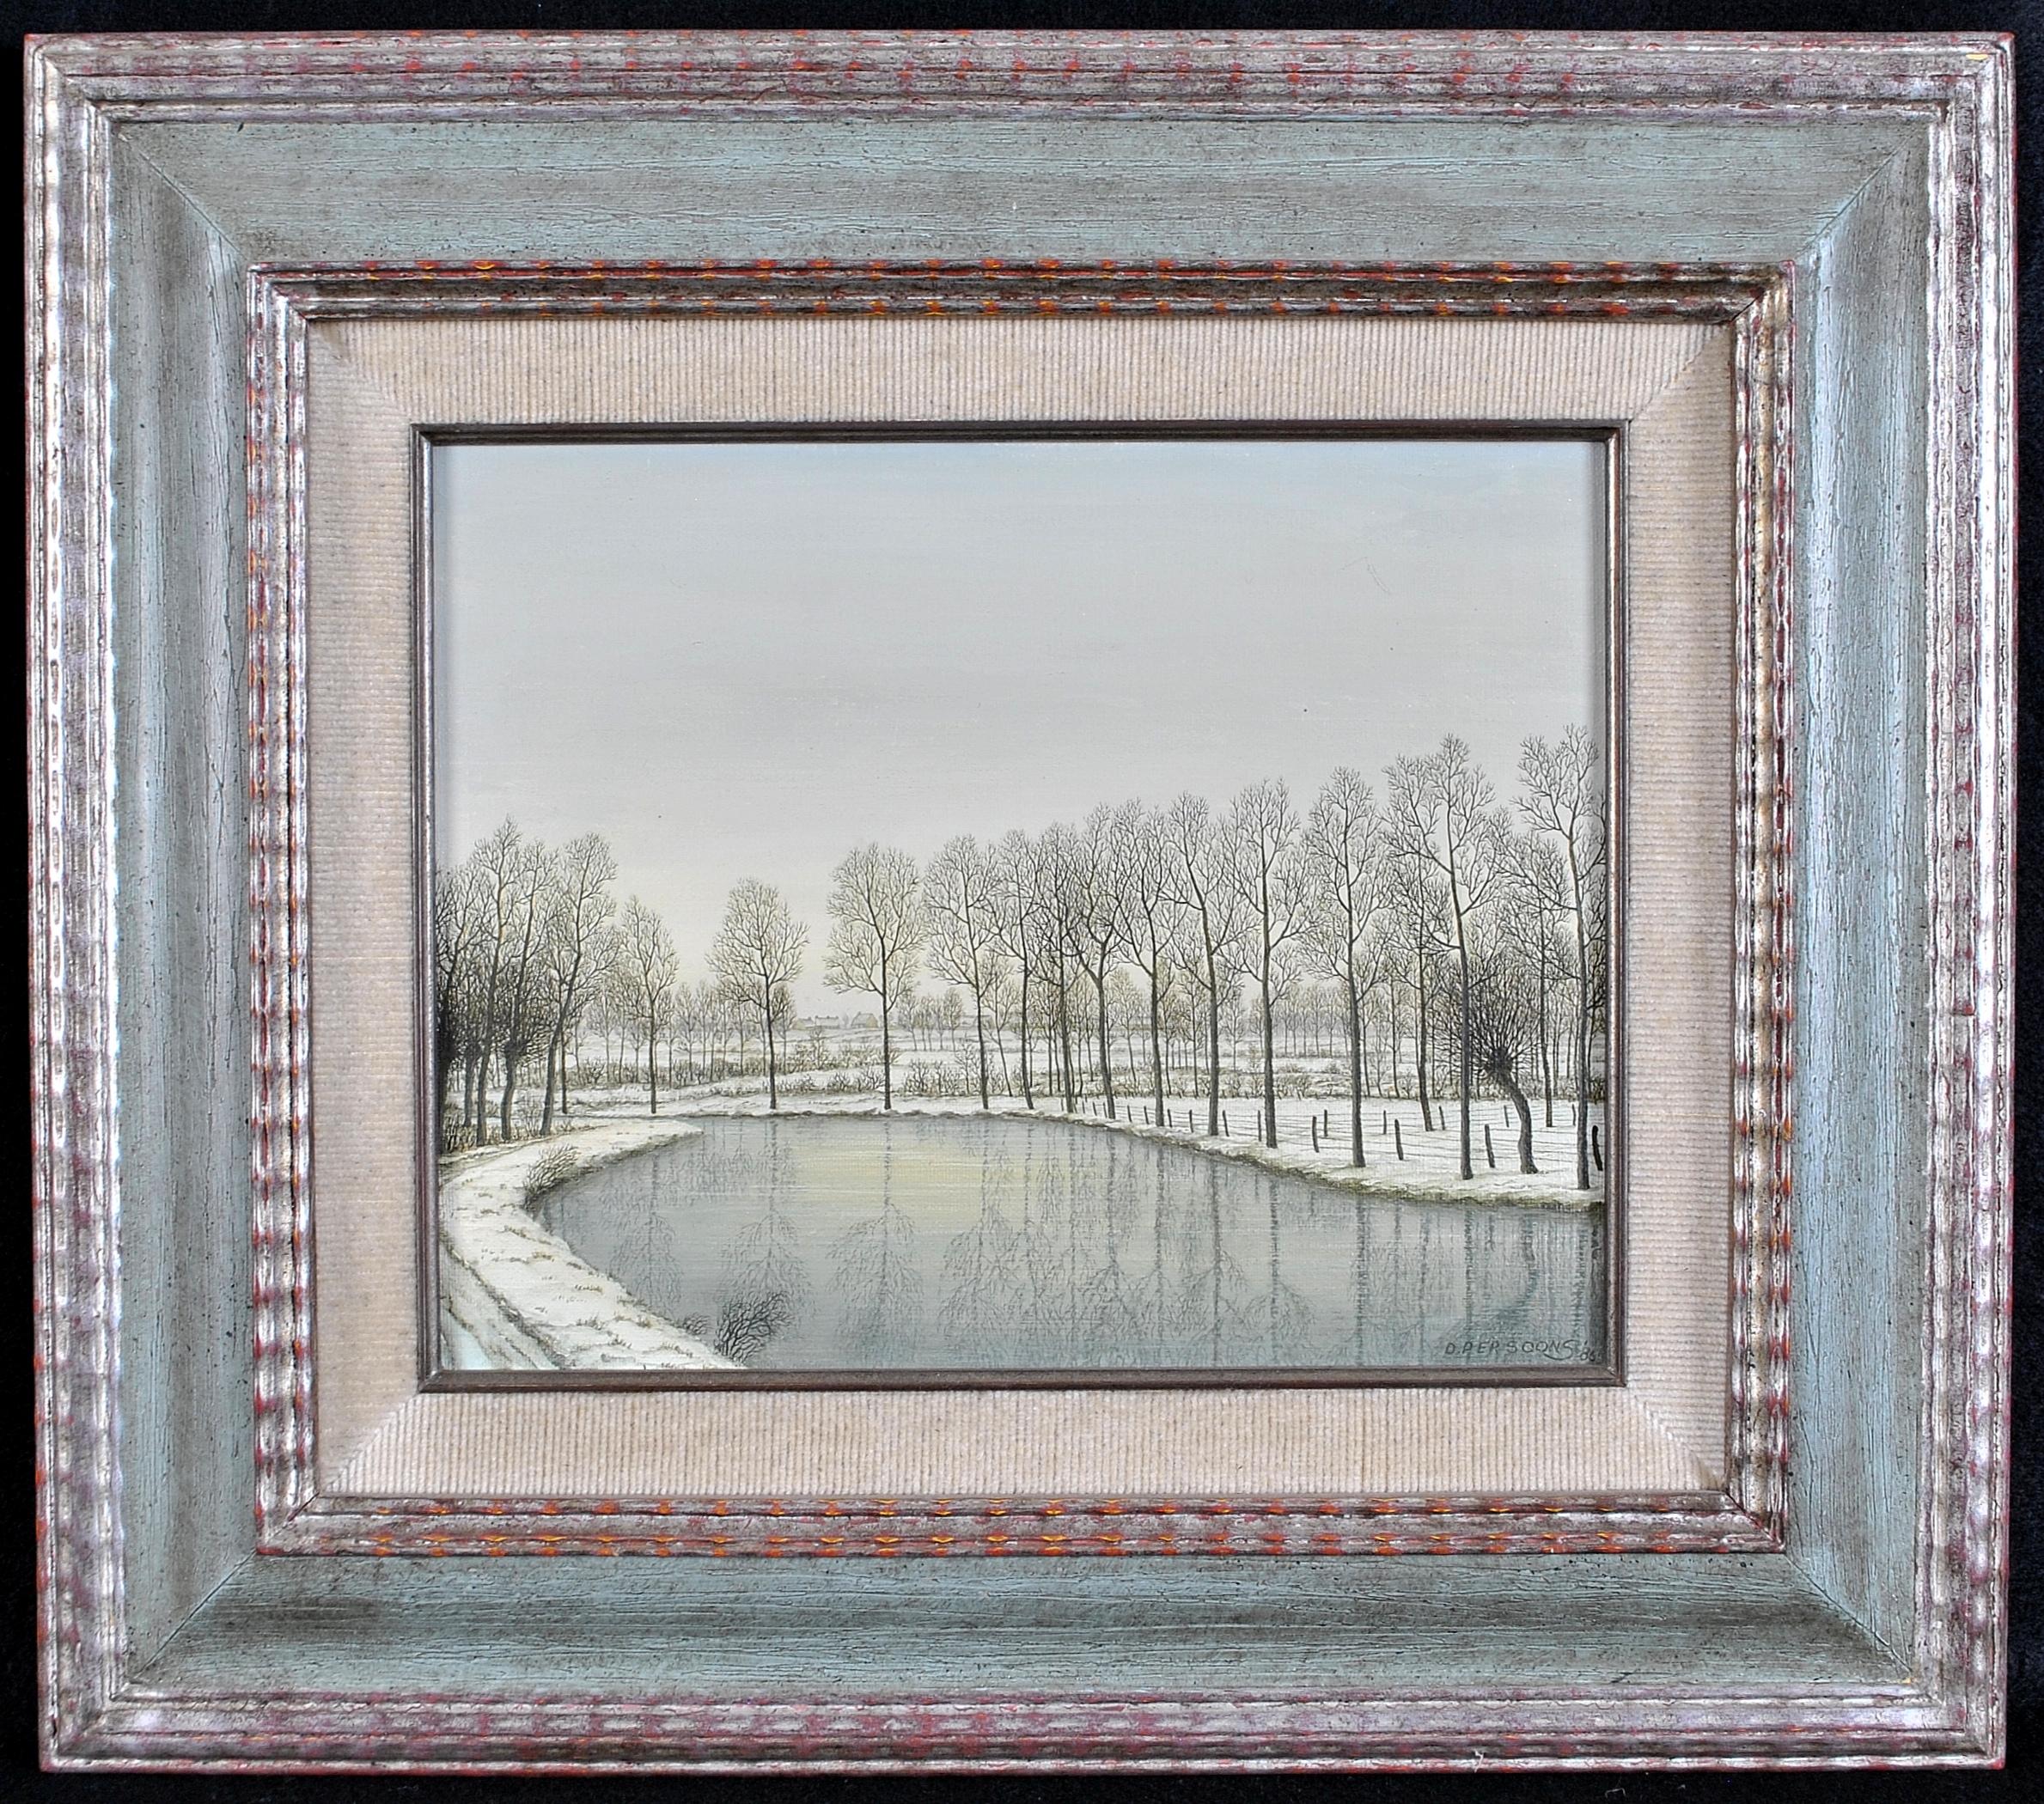 Landscape Painting 20th Century Belgian School - Paysage de rivière d'hiver - Peinture naïve belge du 20e siècle représentant un paysage de rivière des neiges